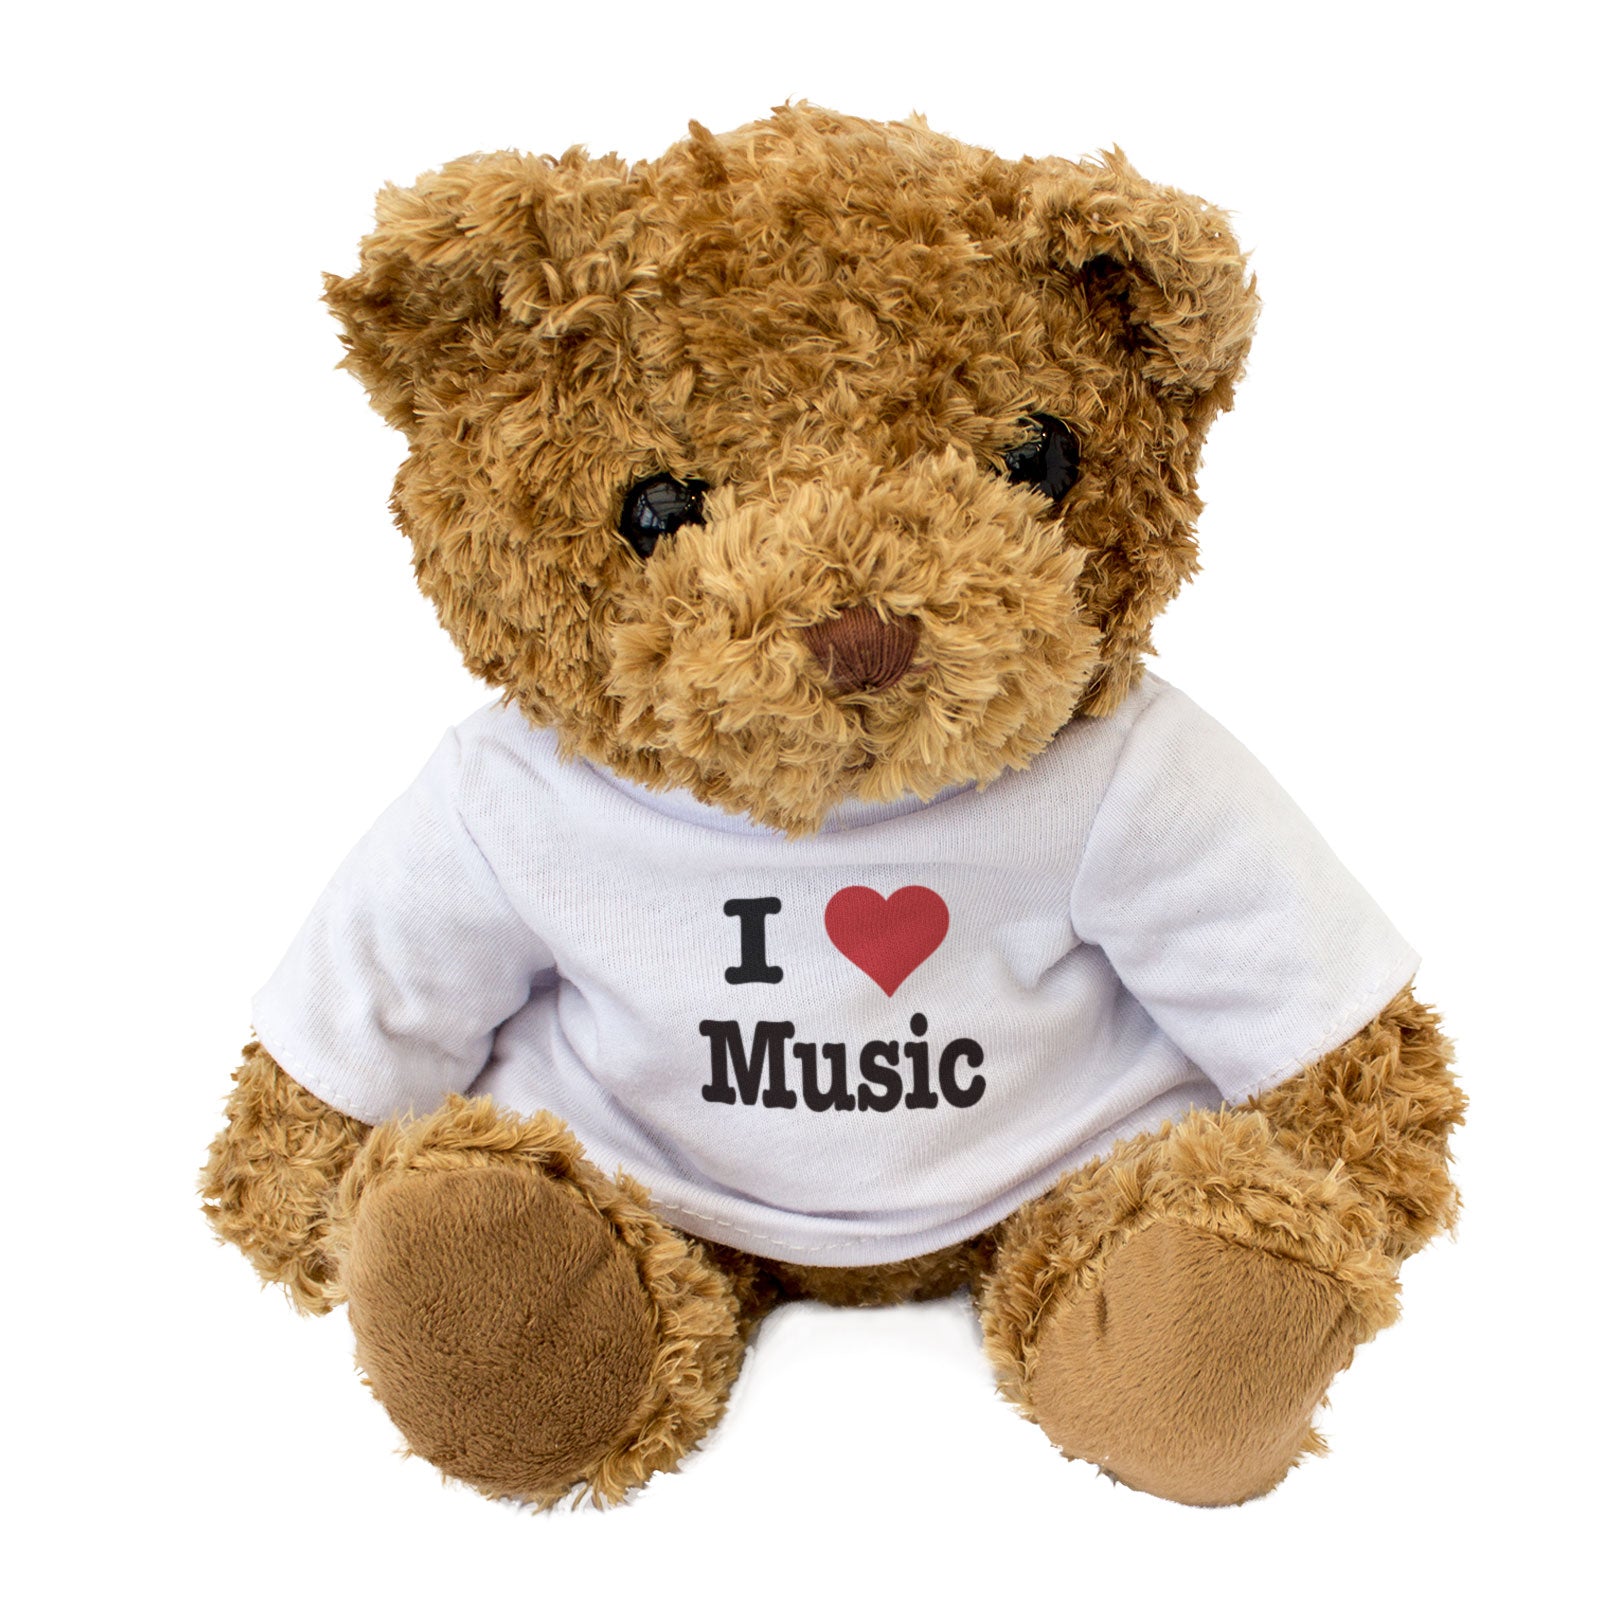 I Love Music - Teddy Bear